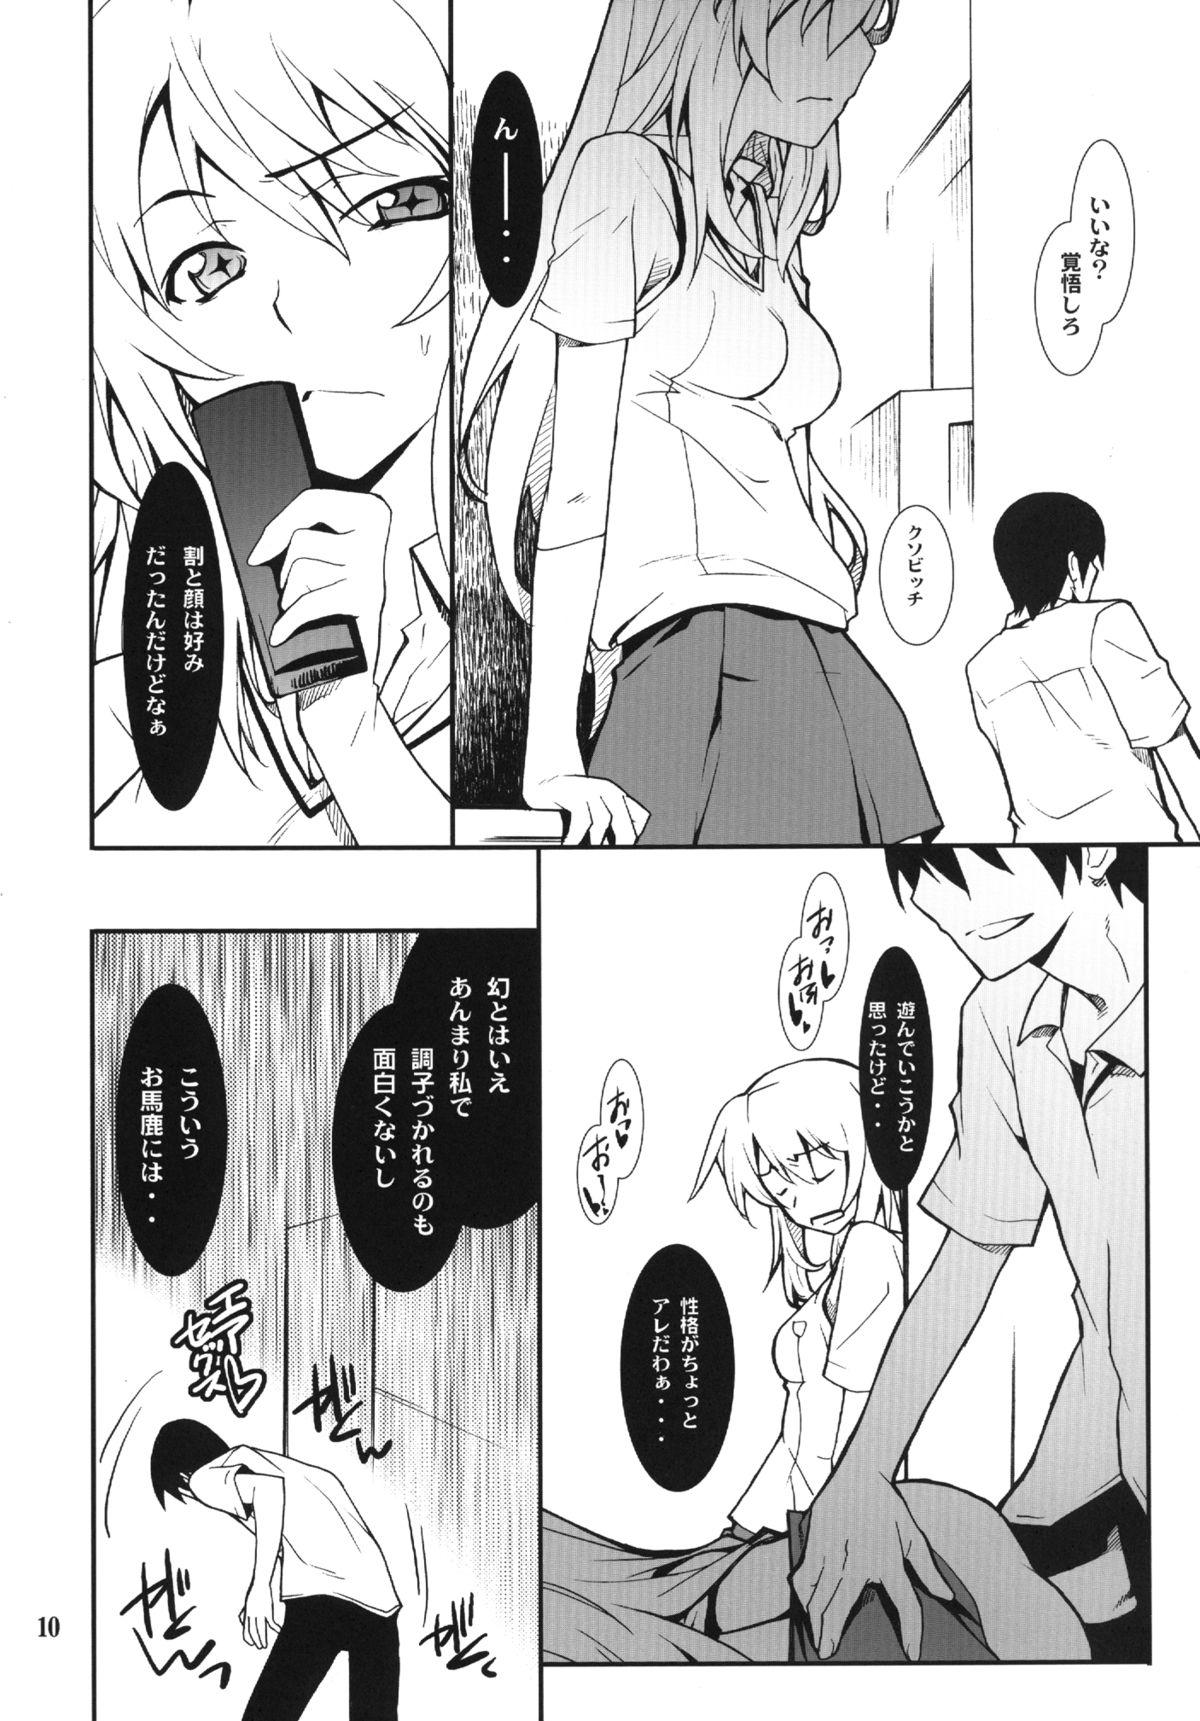 Ffm Yaritai Houdai - Toaru kagaku no railgun Mulata - Page 10